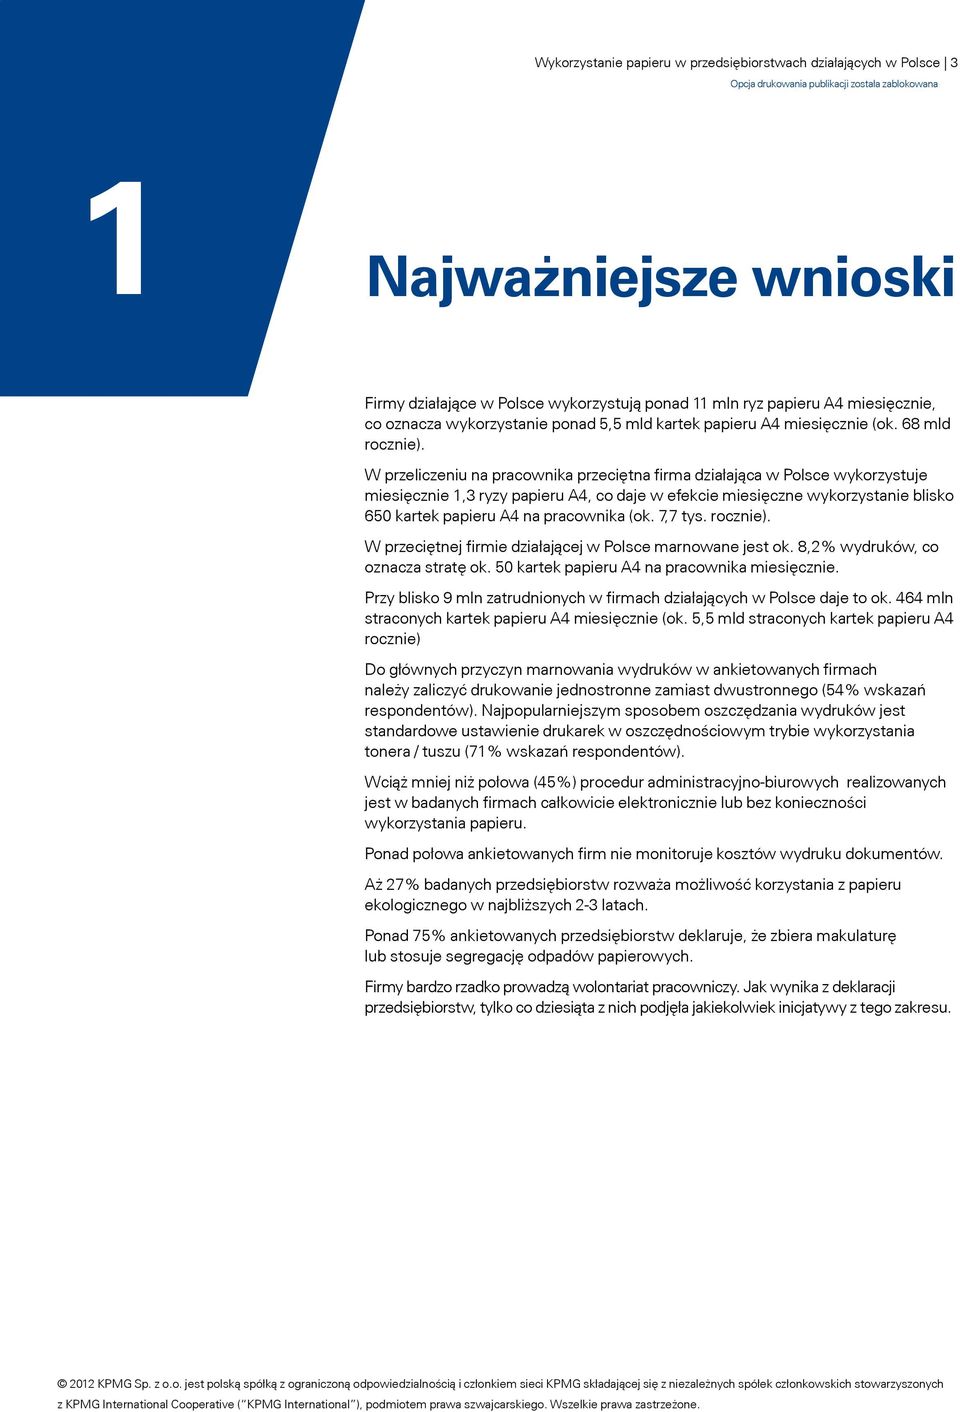 W przeliczeniu na pracownika przeciętna firma działająca w Polsce wykorzystuje miesięcznie 1,3 ryzy papieru A4, co daje w efekcie miesięczne wykorzystanie blisko 650 kartek papieru A4 na pracownika